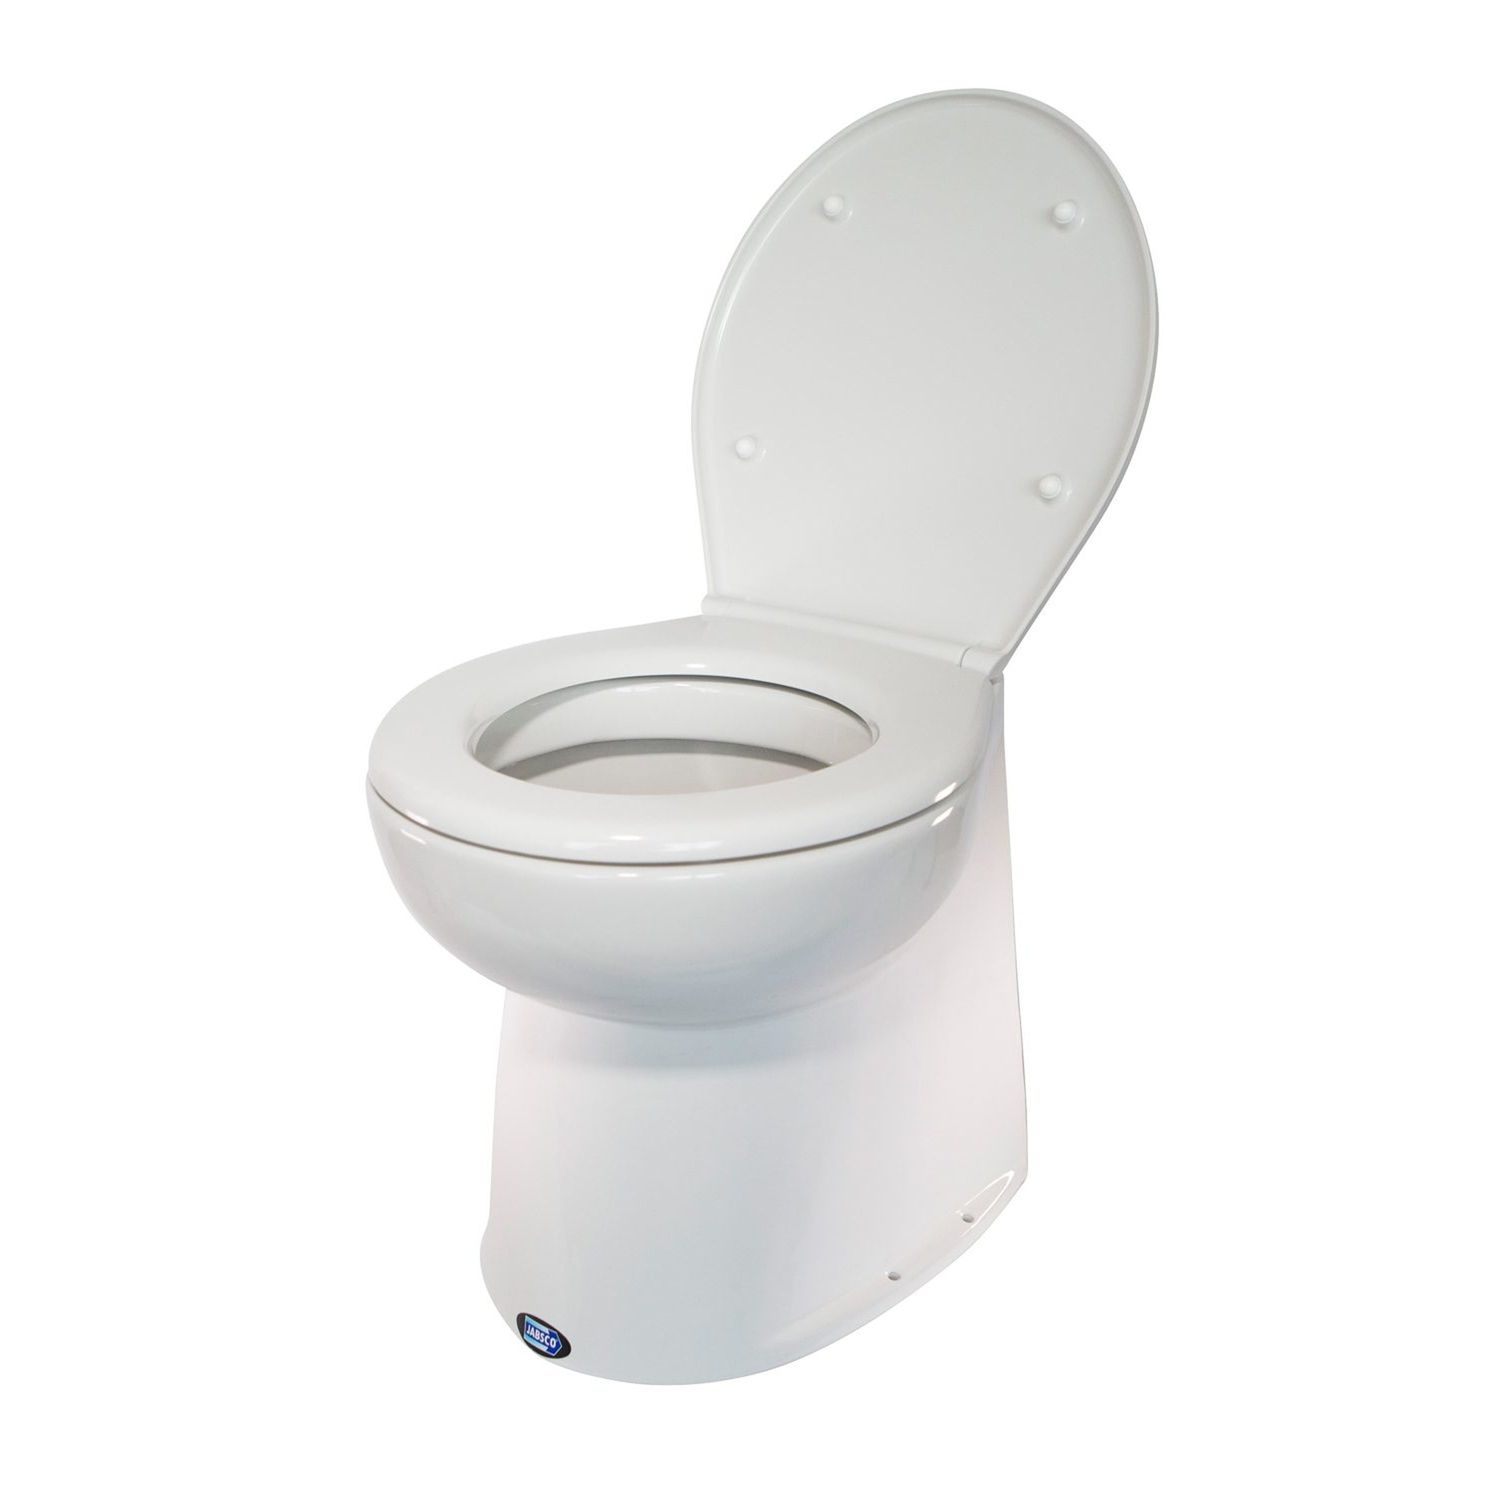 Jabsco Deluxe Flush El-toilet Vinklet Ryg Solenoid 12/24V